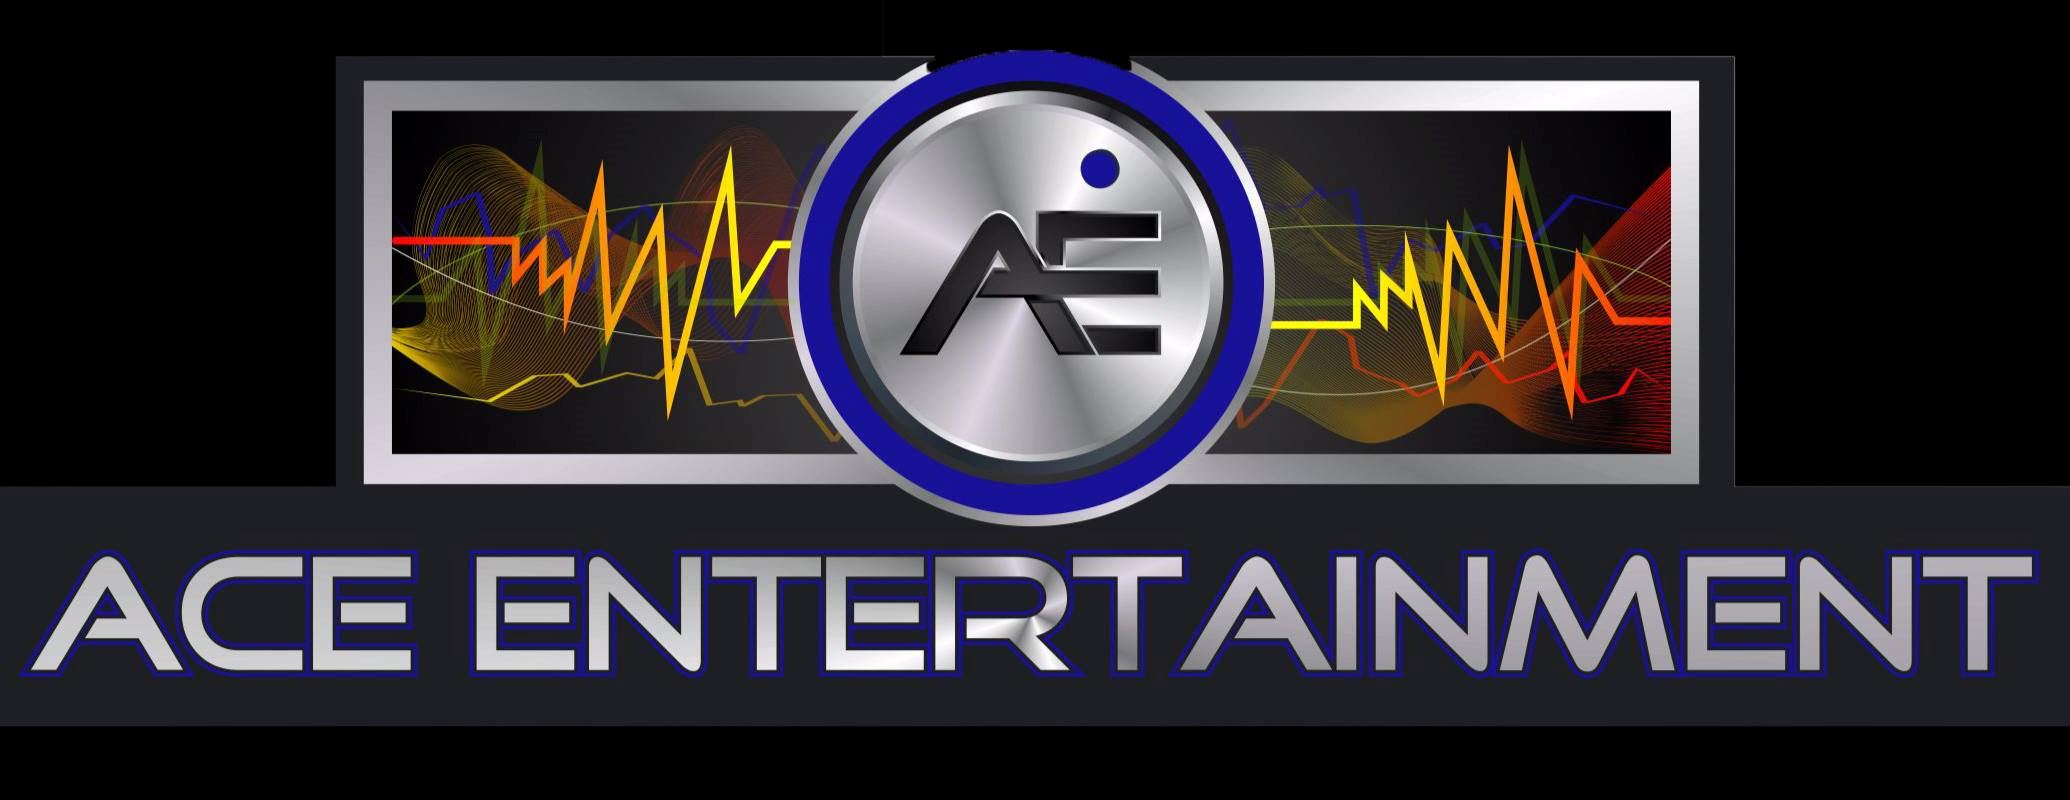 Ace Entertainment - 1